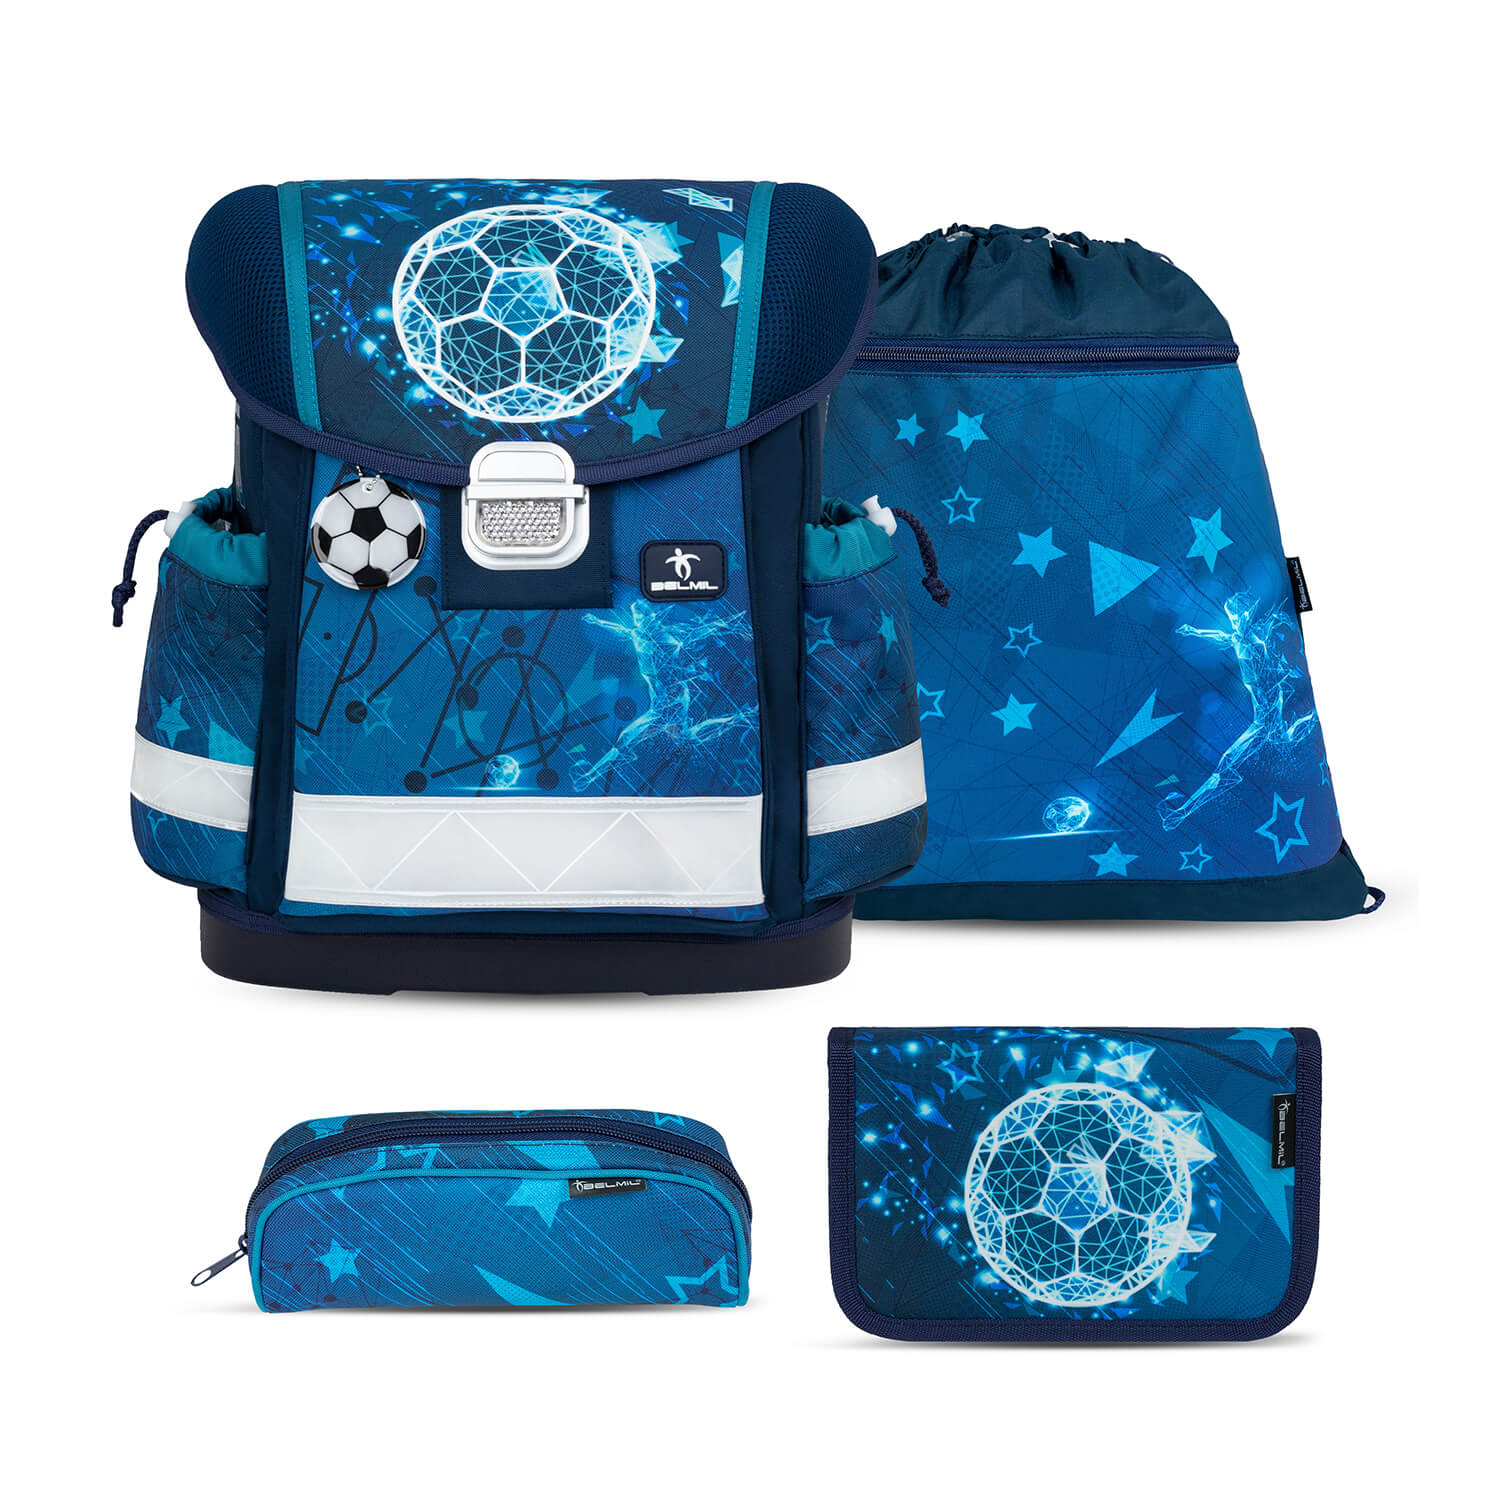 Classy Footballers schoolbag set 4 pcs